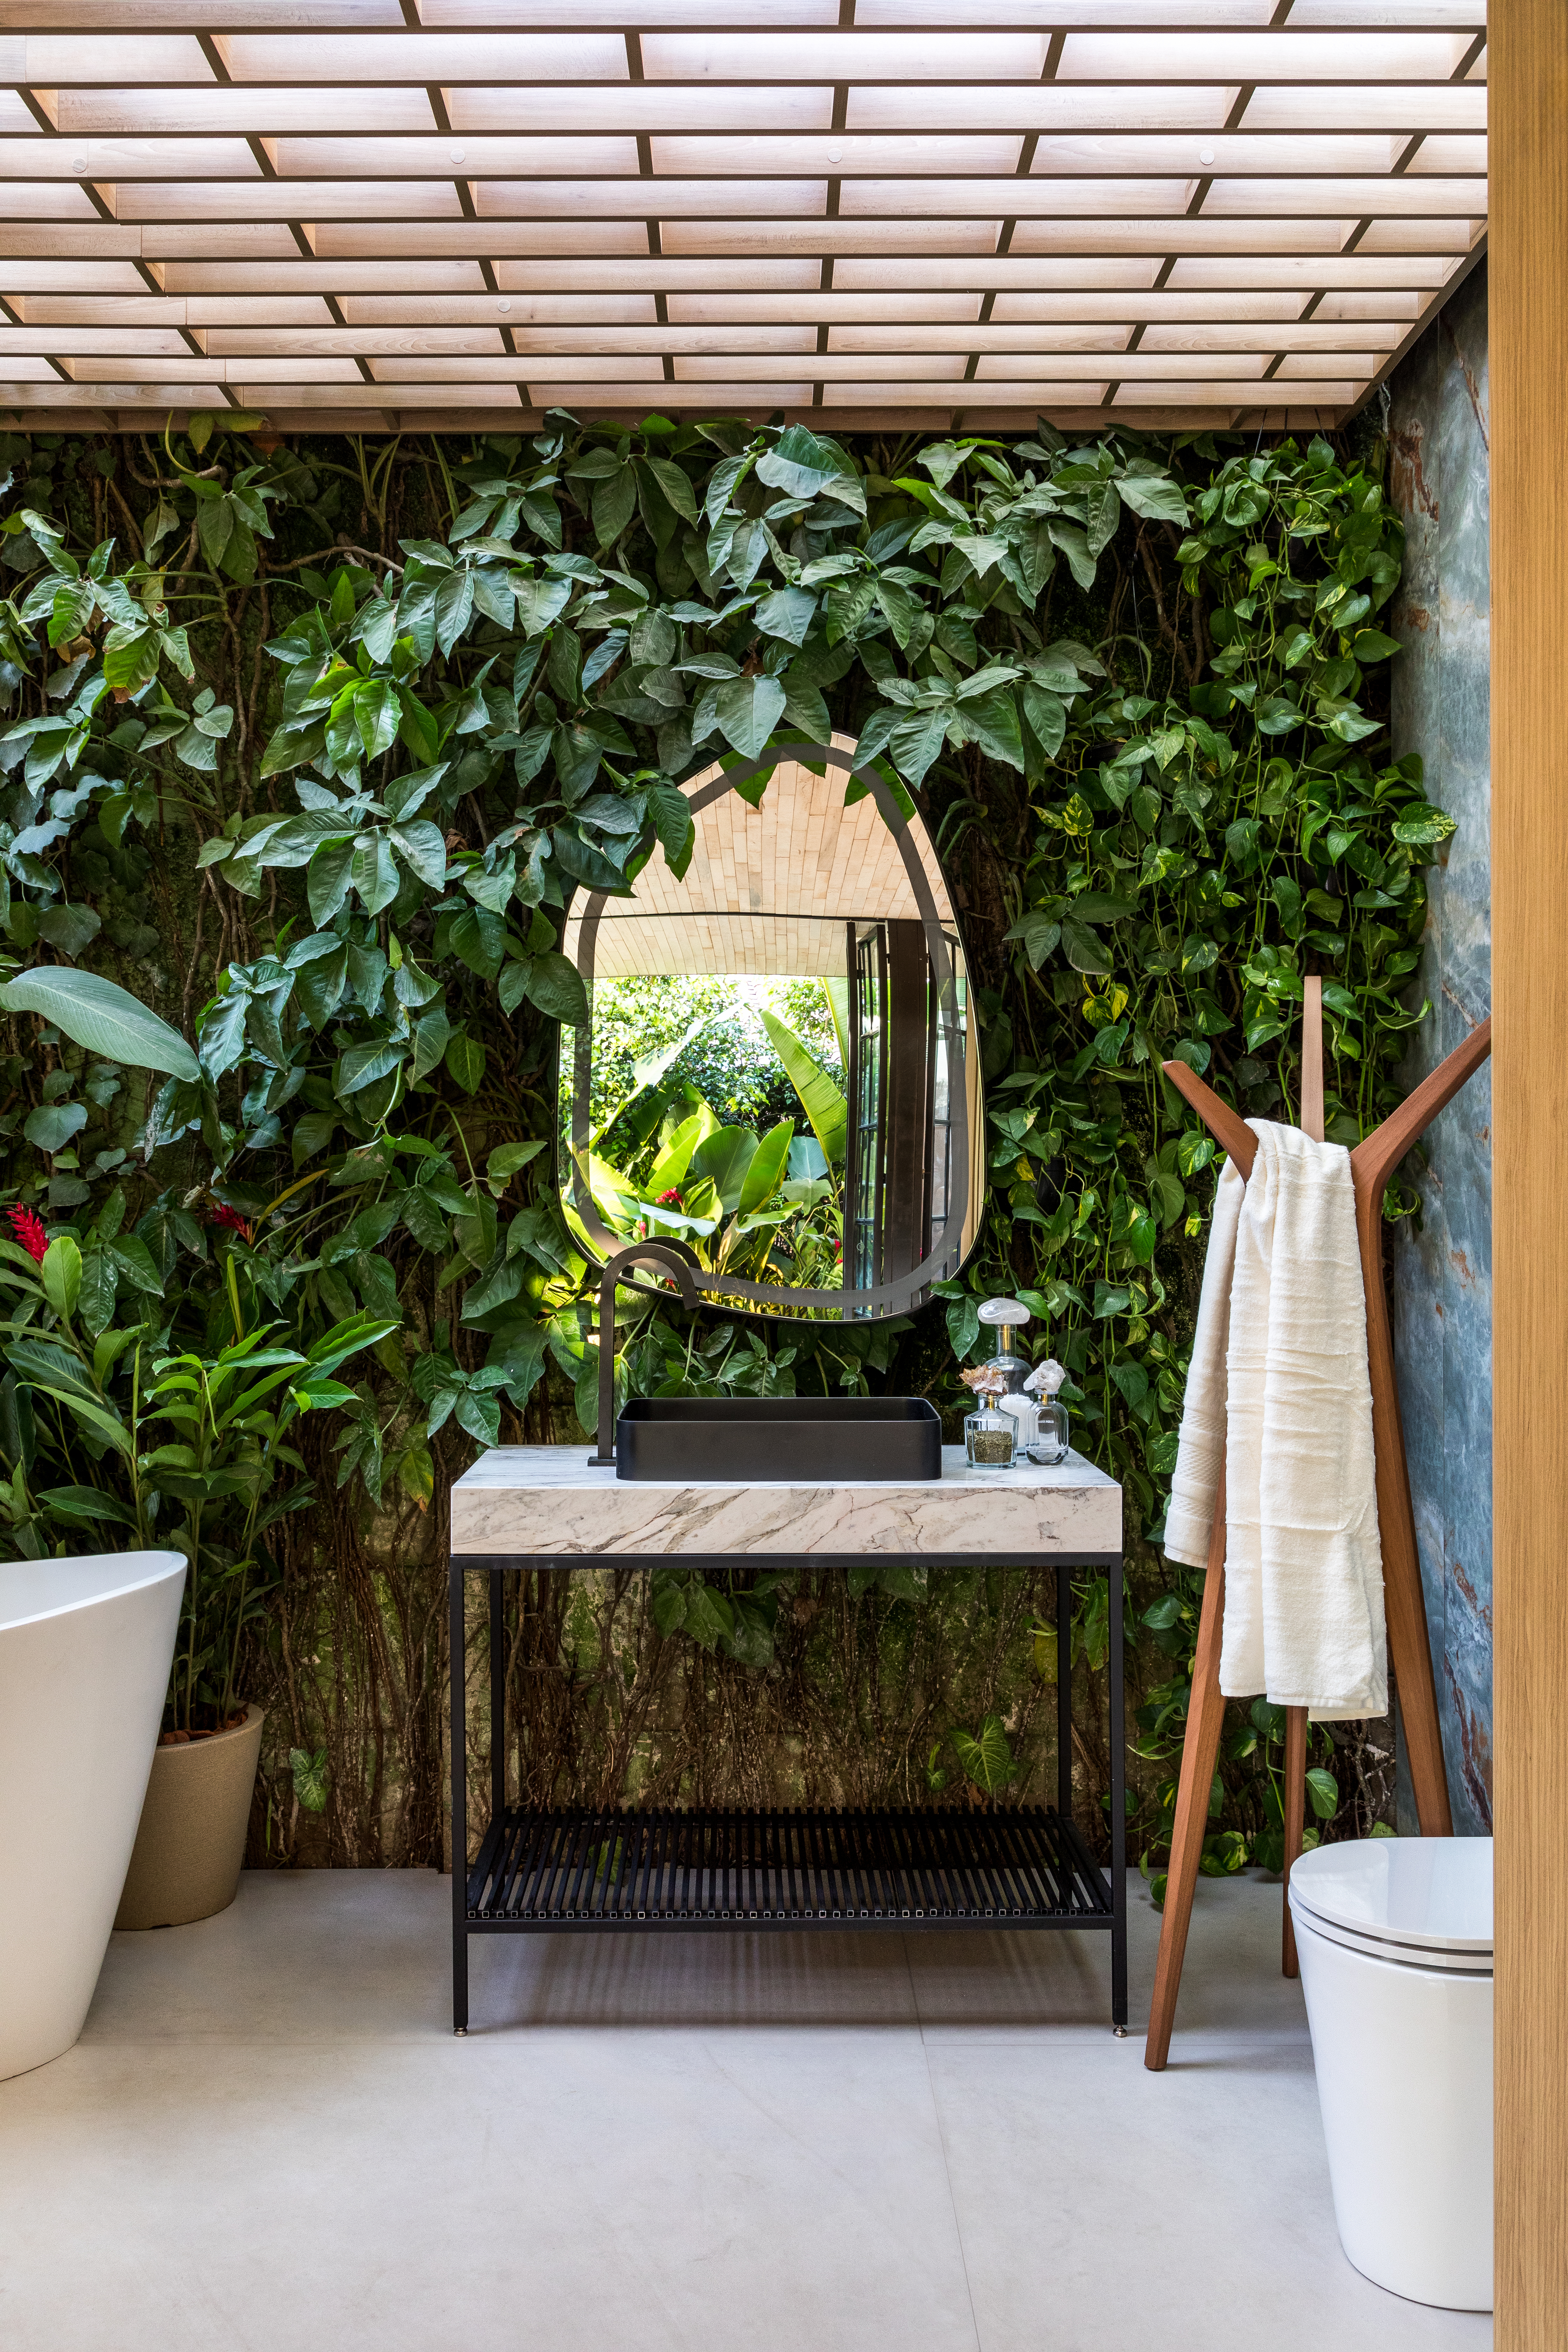 Pedras e vegetação em abundância marcam a estética orgânica deste loft. Projeto de Maria Alice Crippa e Gustavo Assis. Na foto, banheiro com parede viva e espelho em formato orgânico